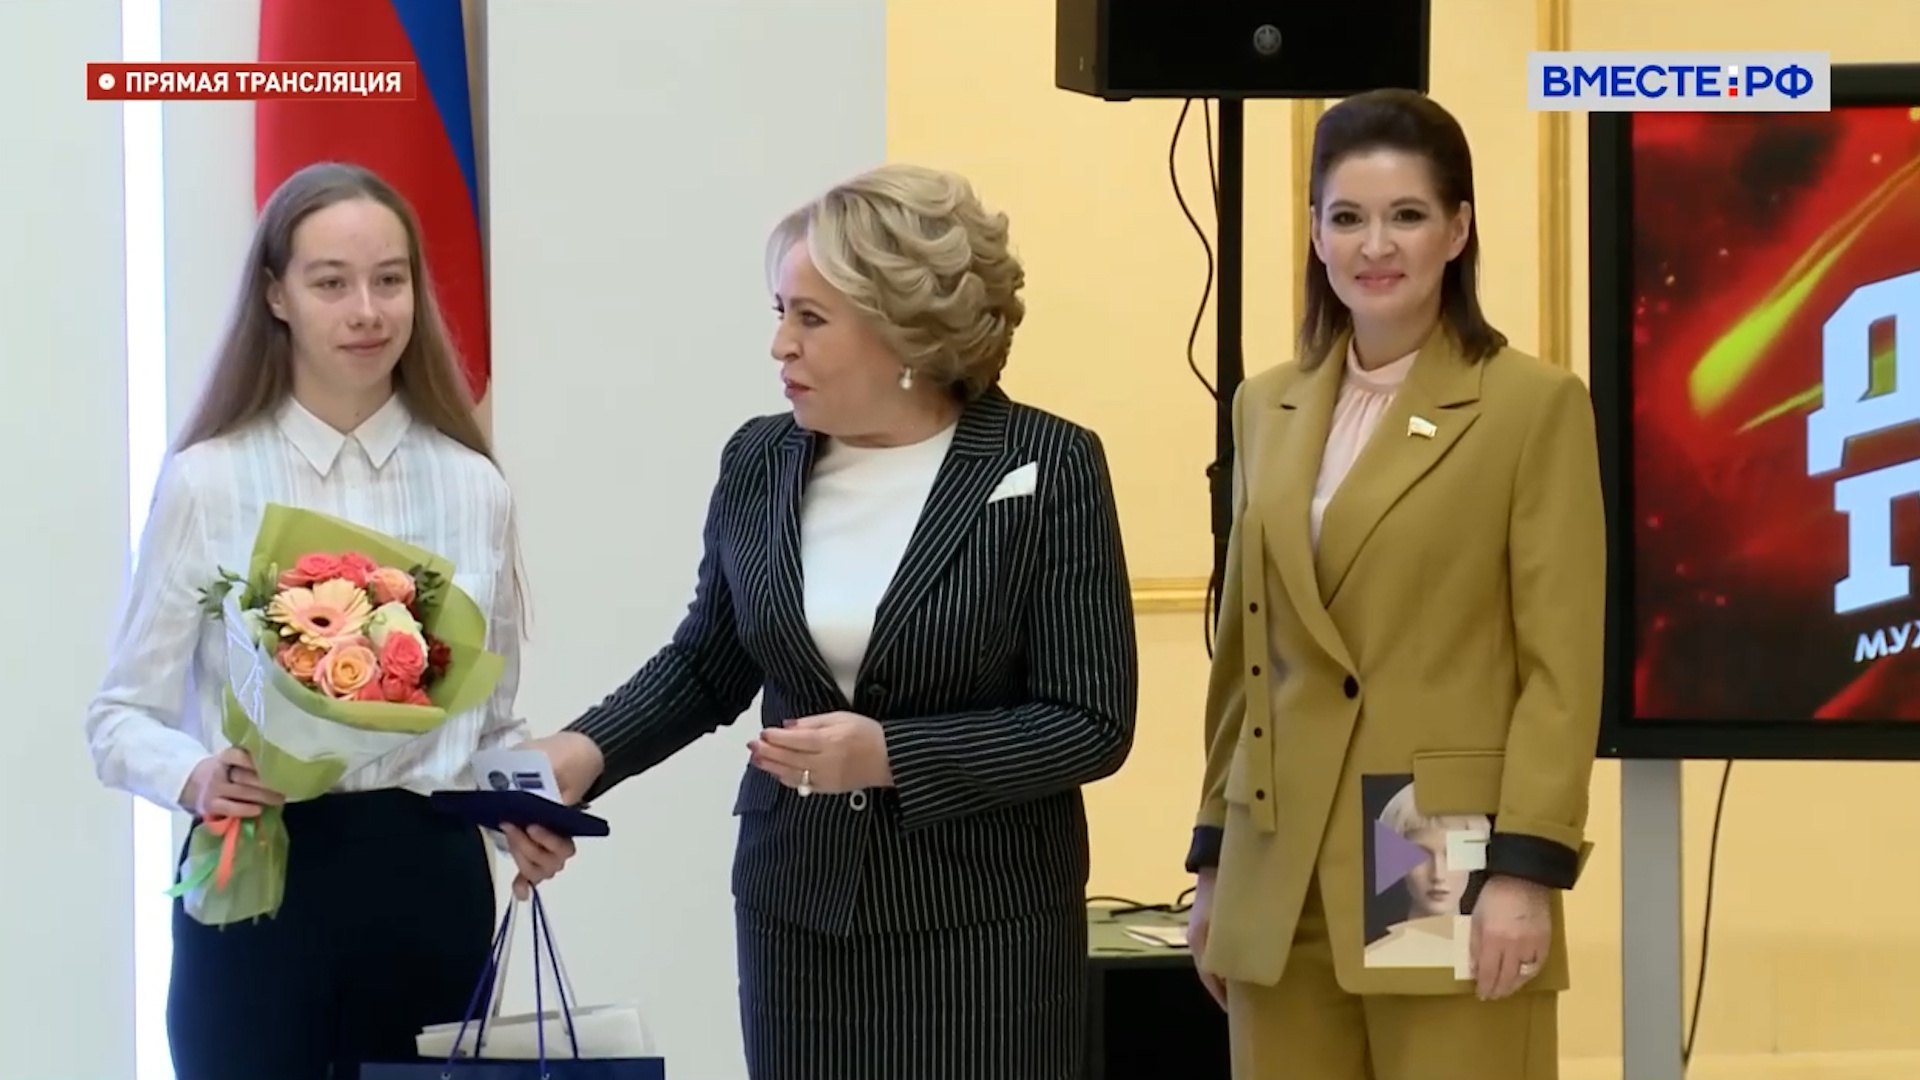 Поддержать Катю на церемонии вышла сенатор от Челябинской области Маргарита Павлова